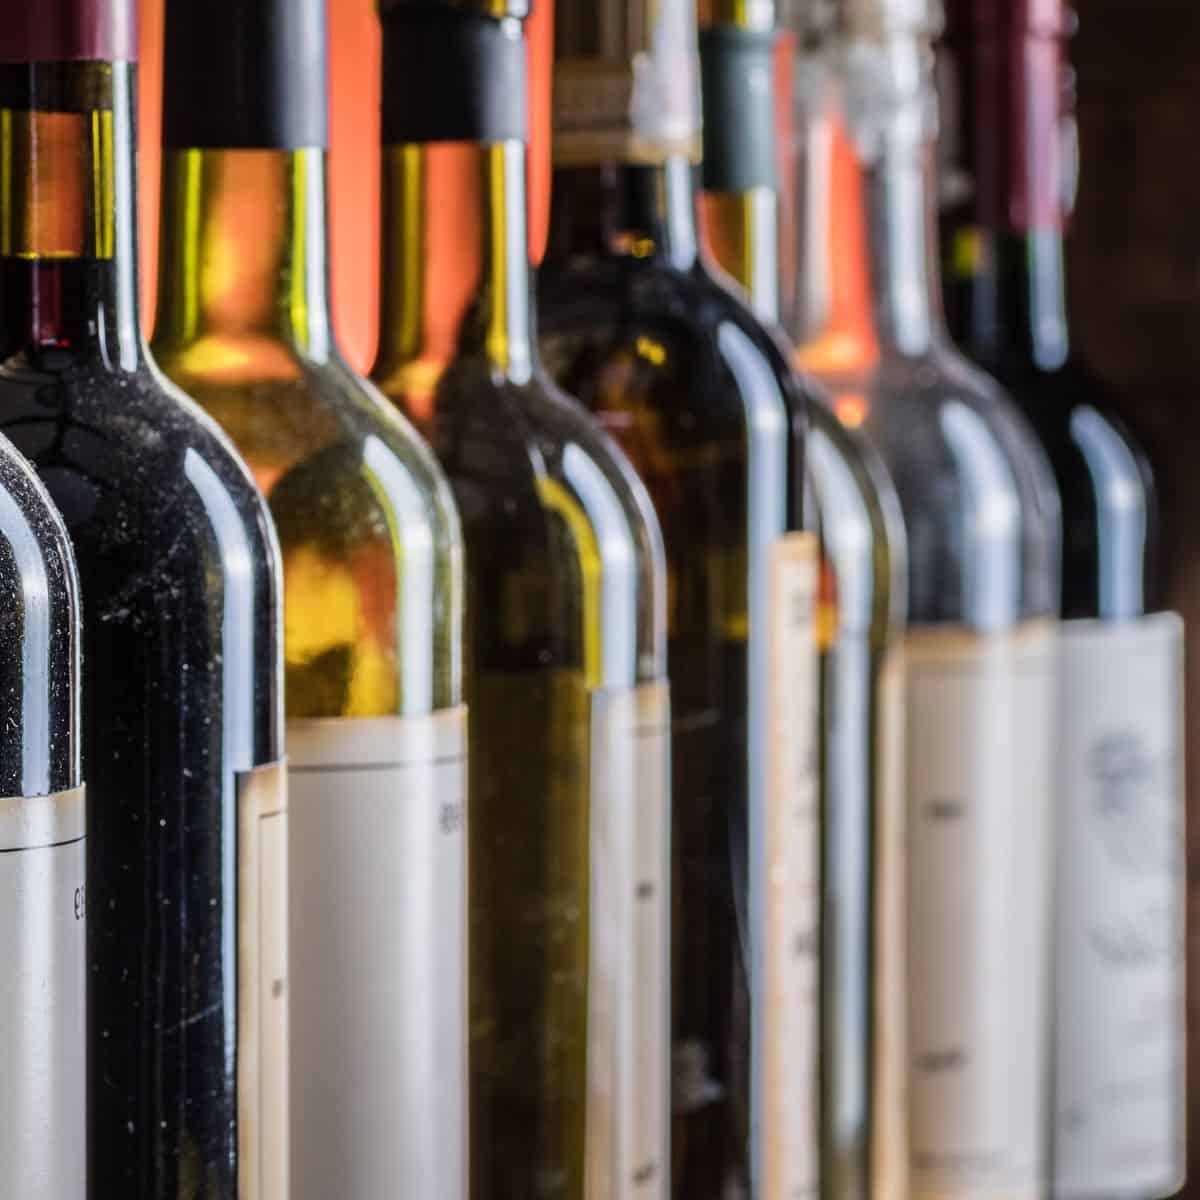 Wine bottles in a line